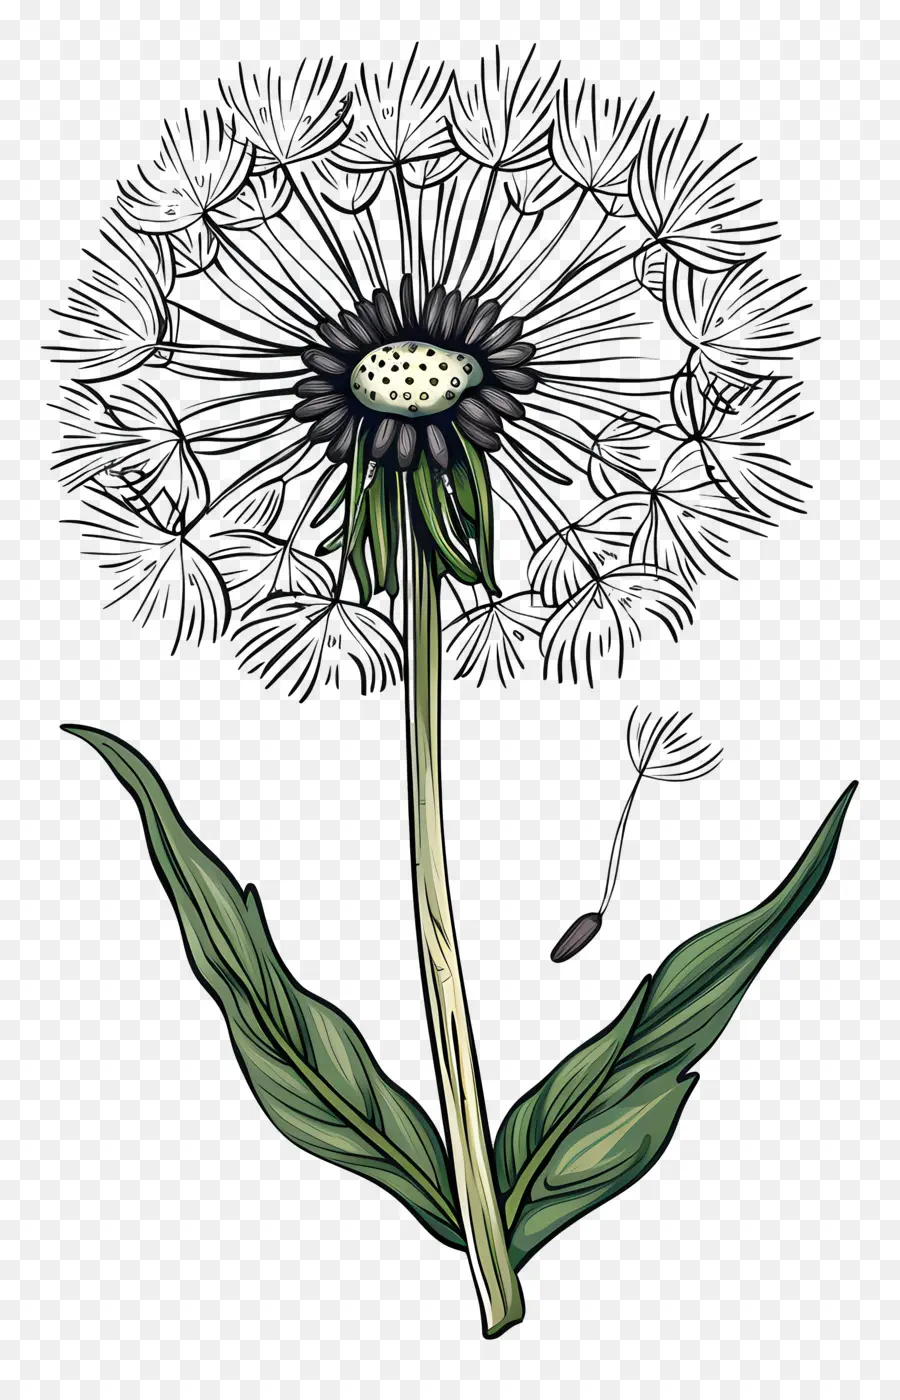 Dandelion Dandelion Flower Black and White Giallo Centro - Fiore di dente di leone bianco e nero con seme